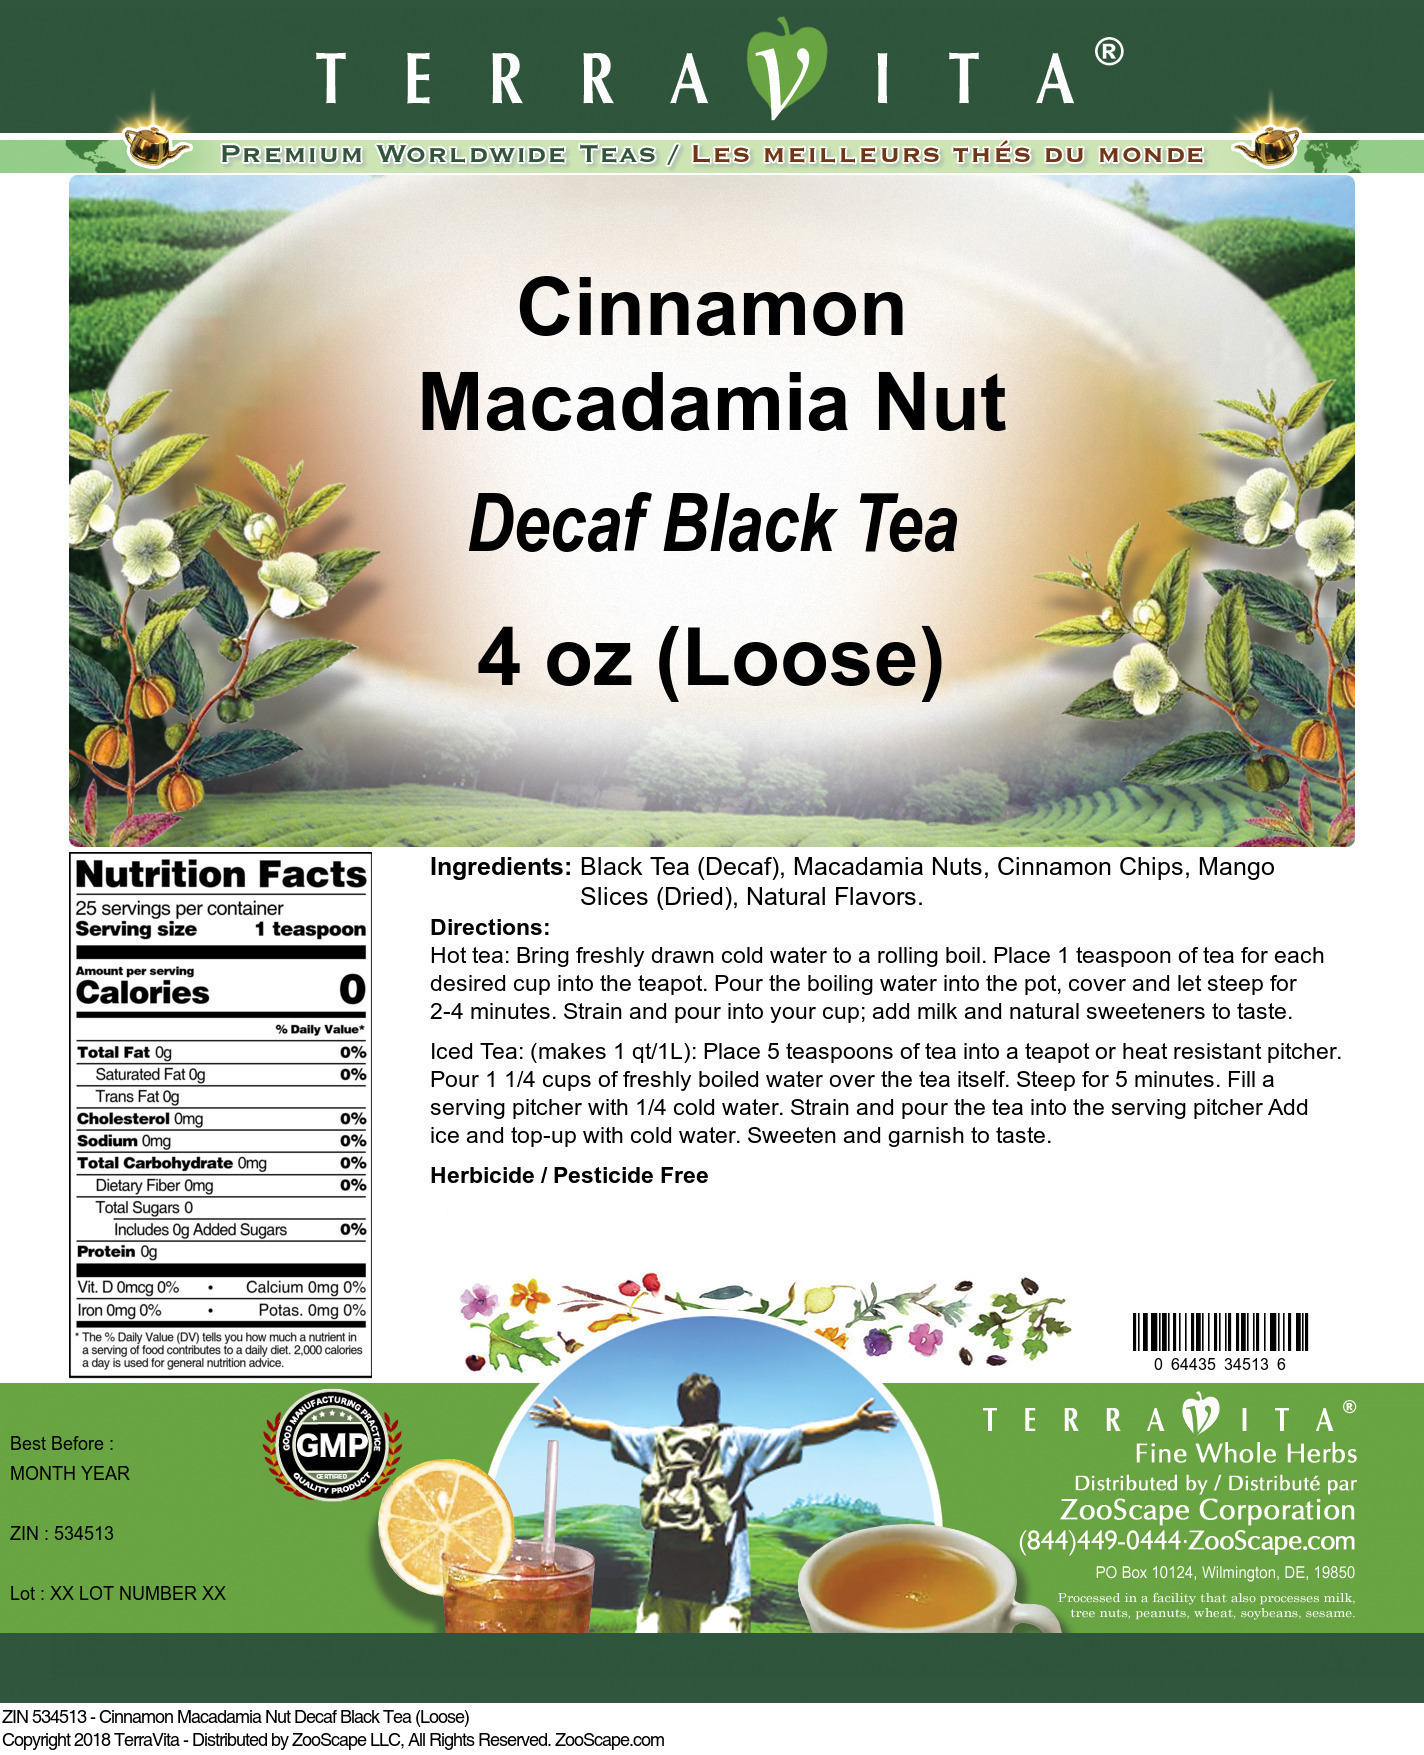 Cinnamon Macadamia Nut Decaf Black Tea (Loose) - Label